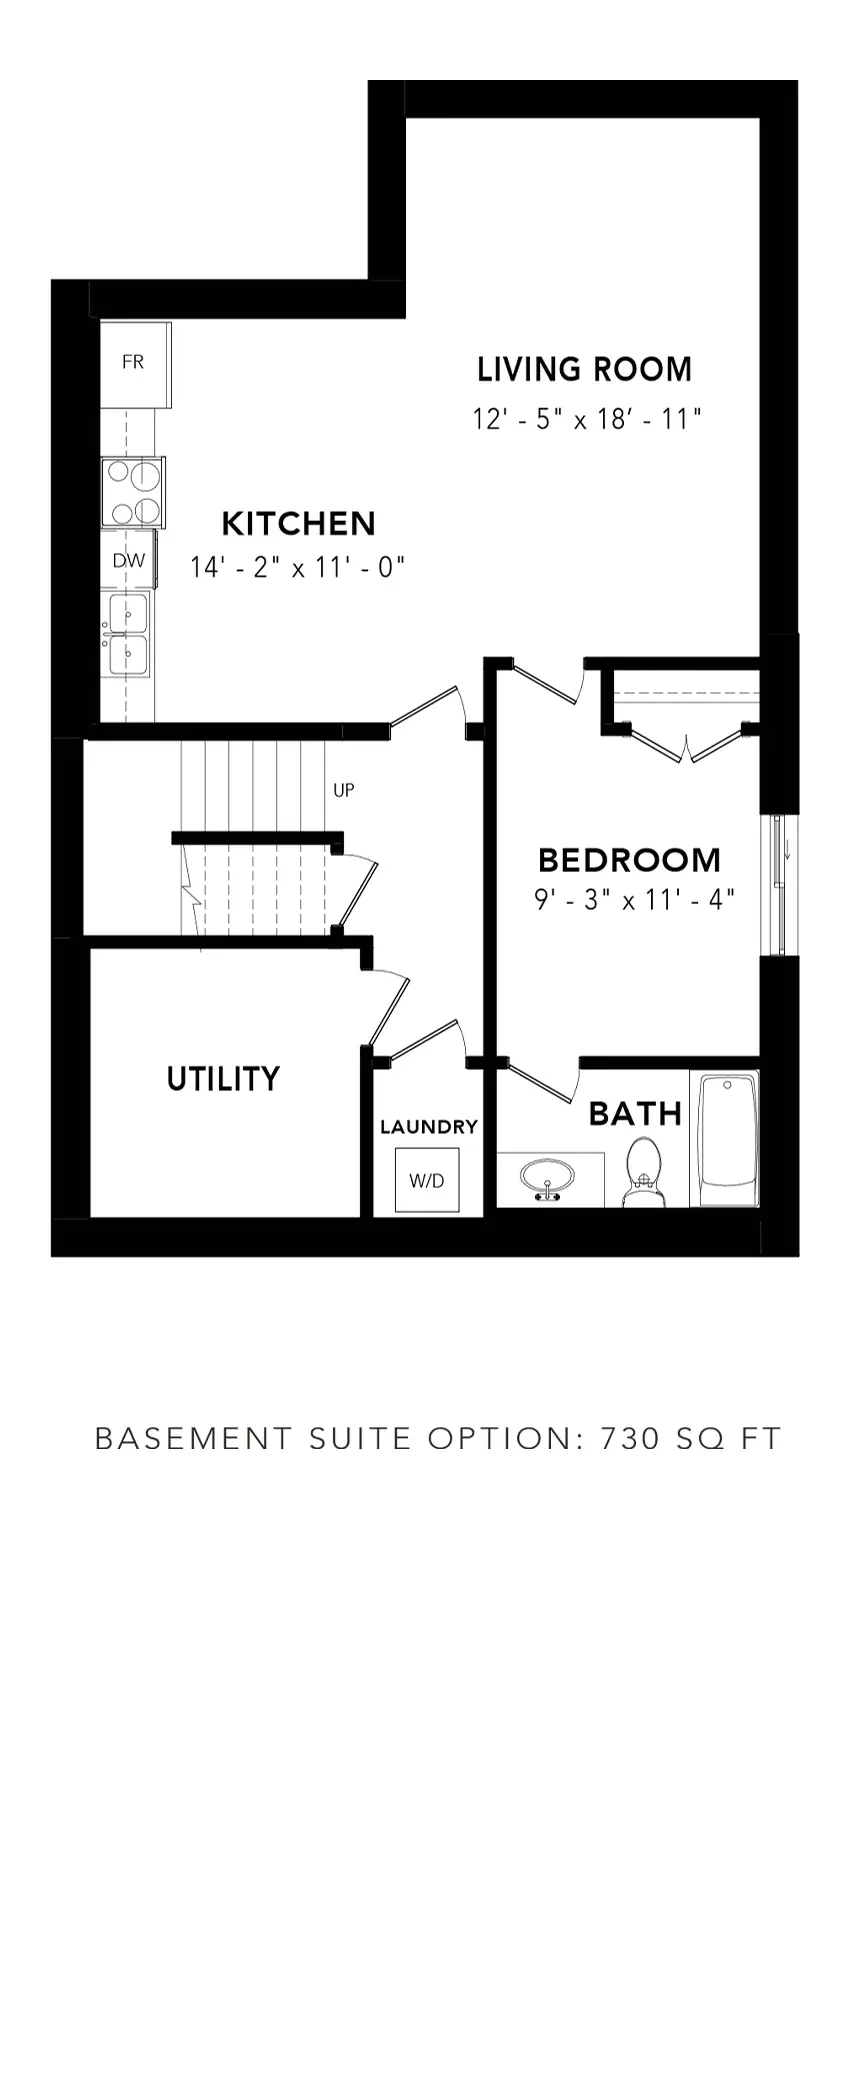 Mountain Ash Basement Suite Option